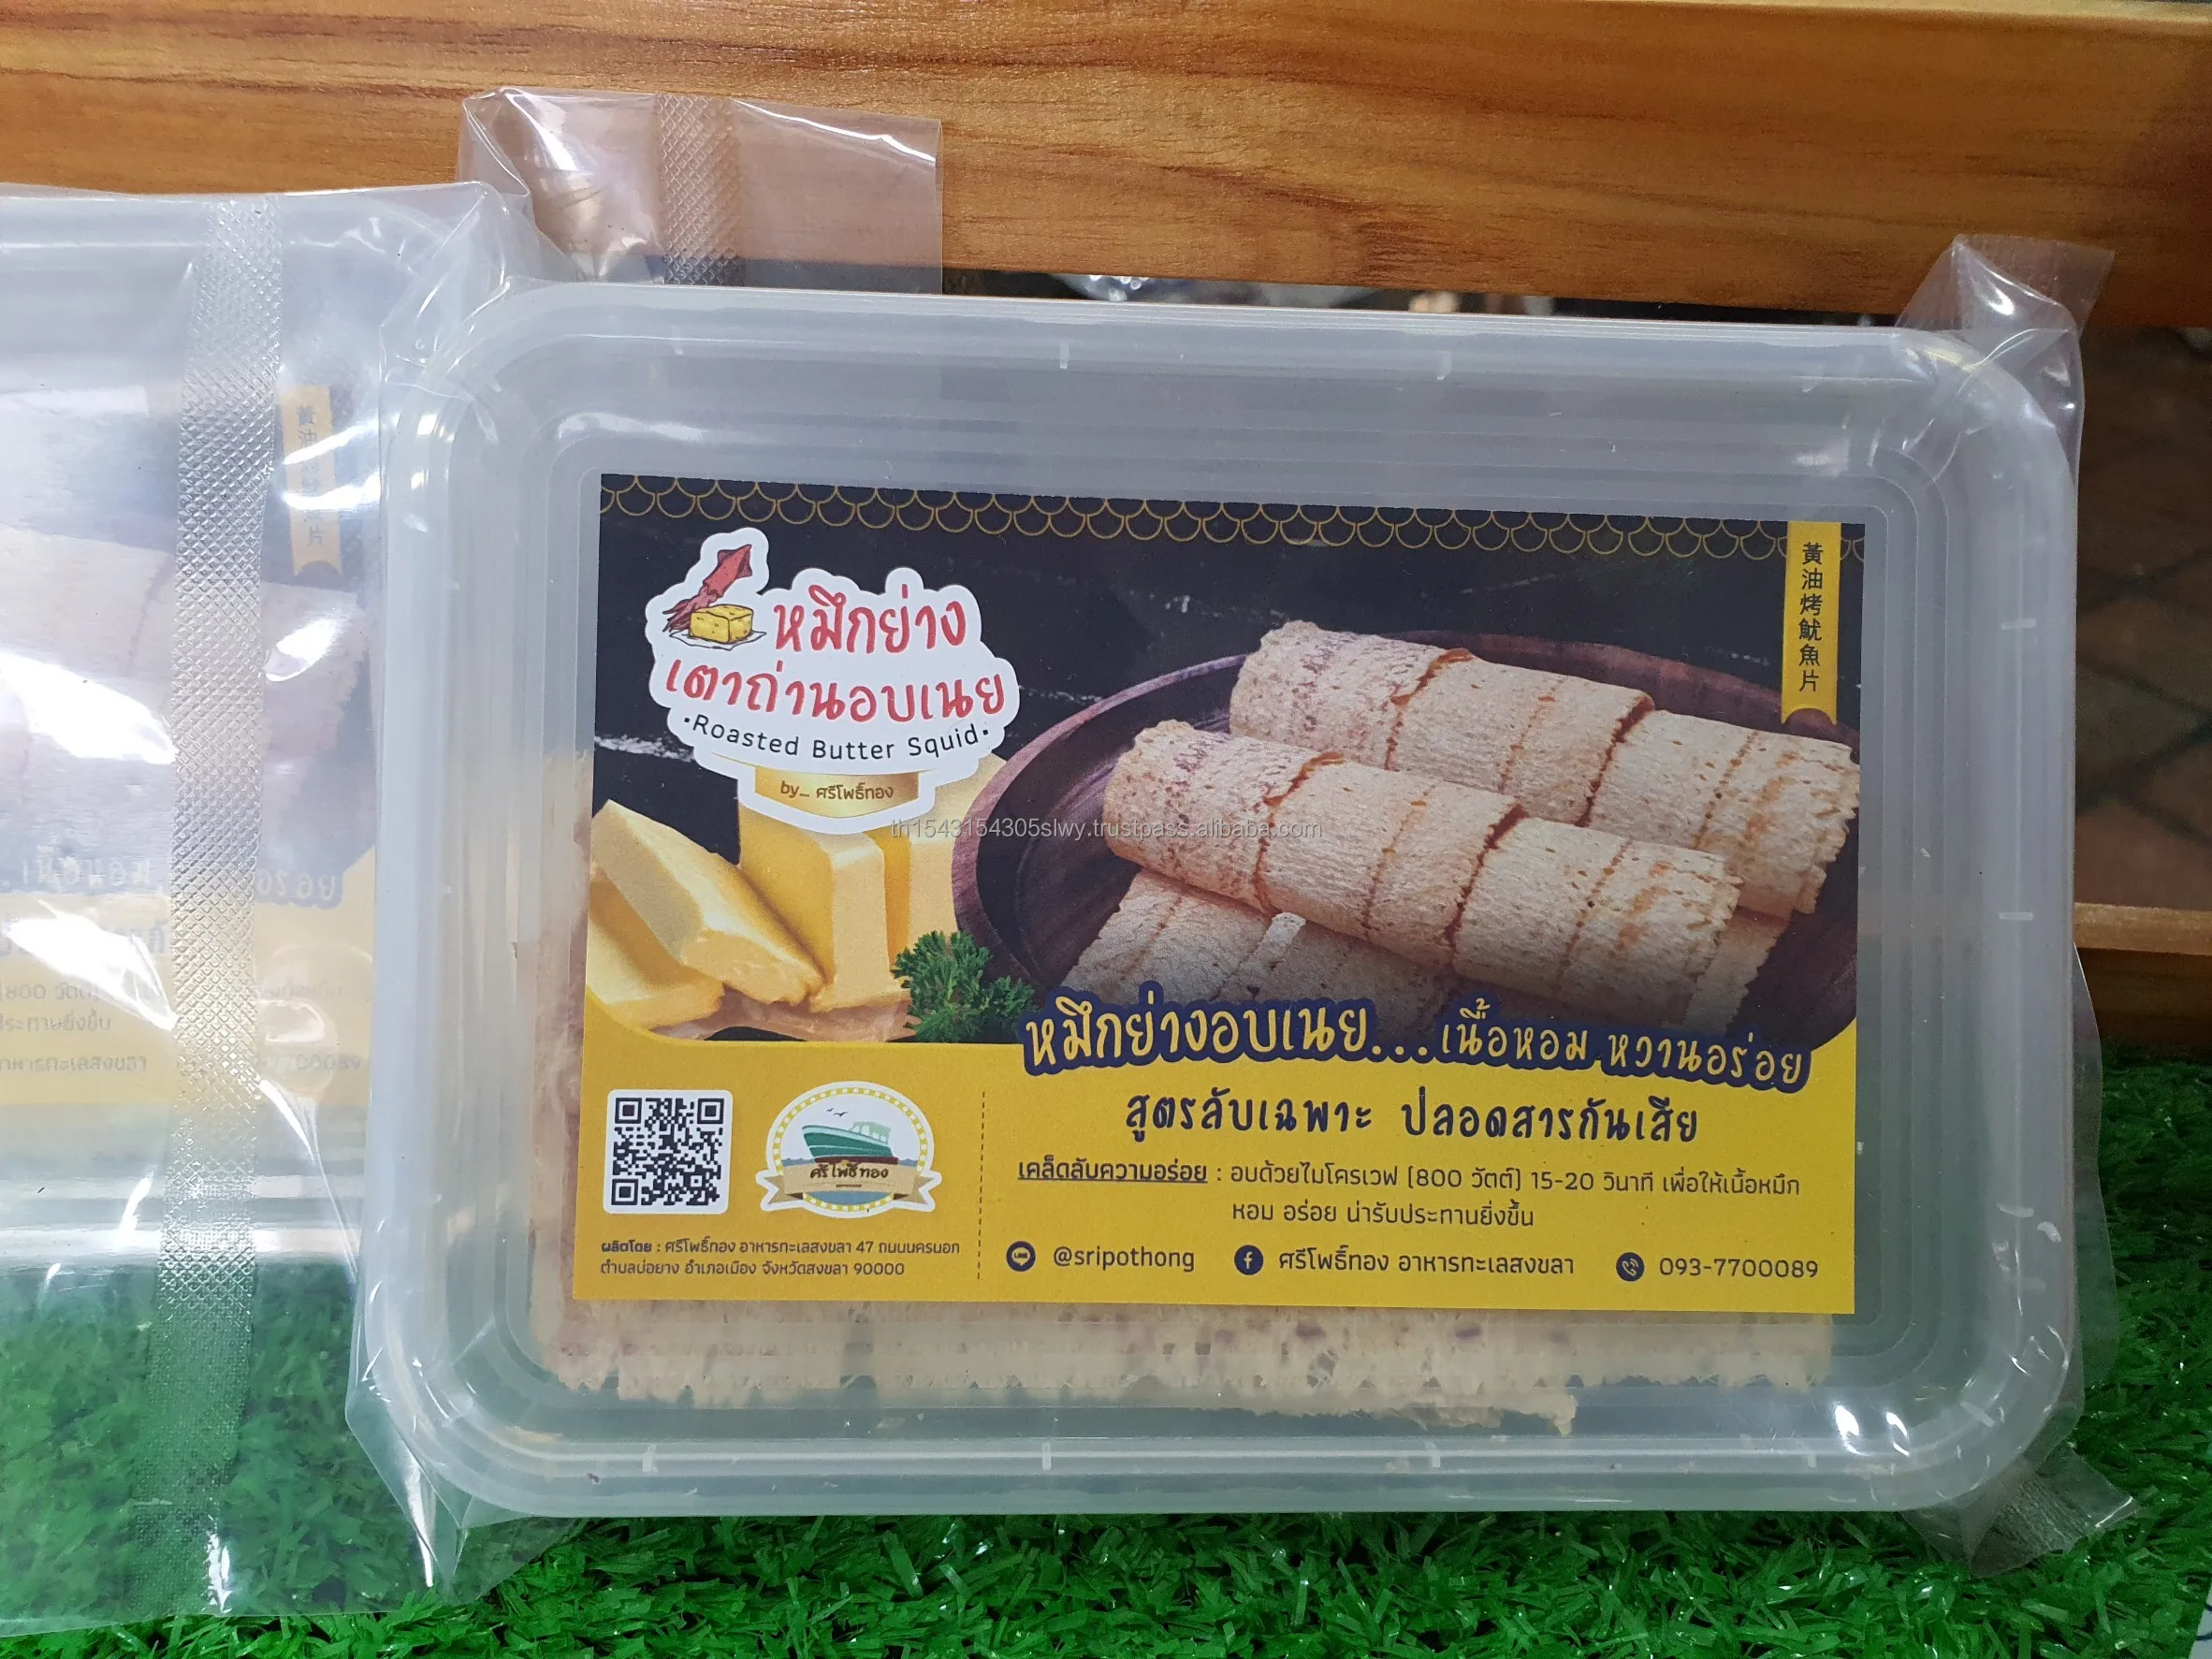 Жареный сливочный кальмар 50 г, закуски для морепродуктов, премиум-продукт из Таиланда, для экспорта по лучшей цене 2021